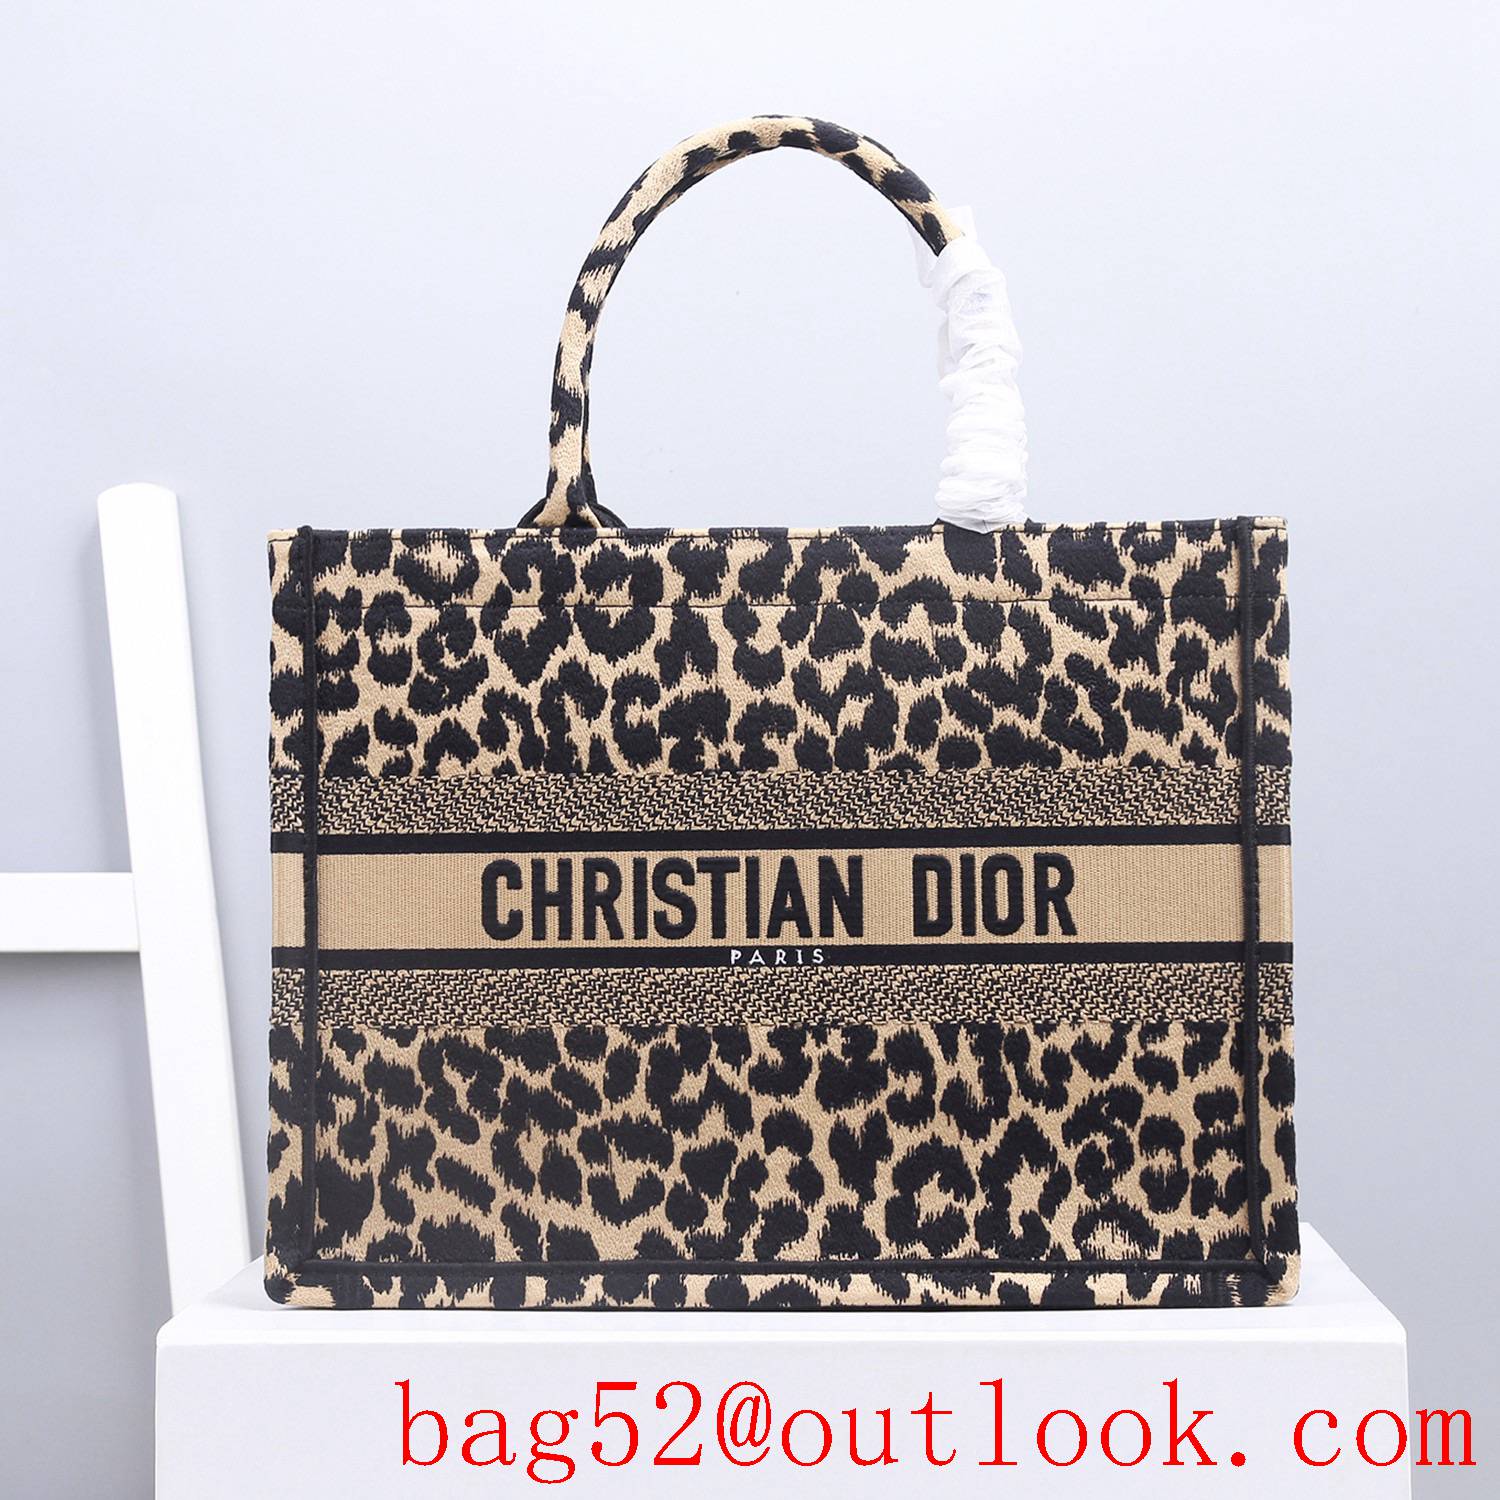 Dior black Leopard print small book tote lady bag handbag